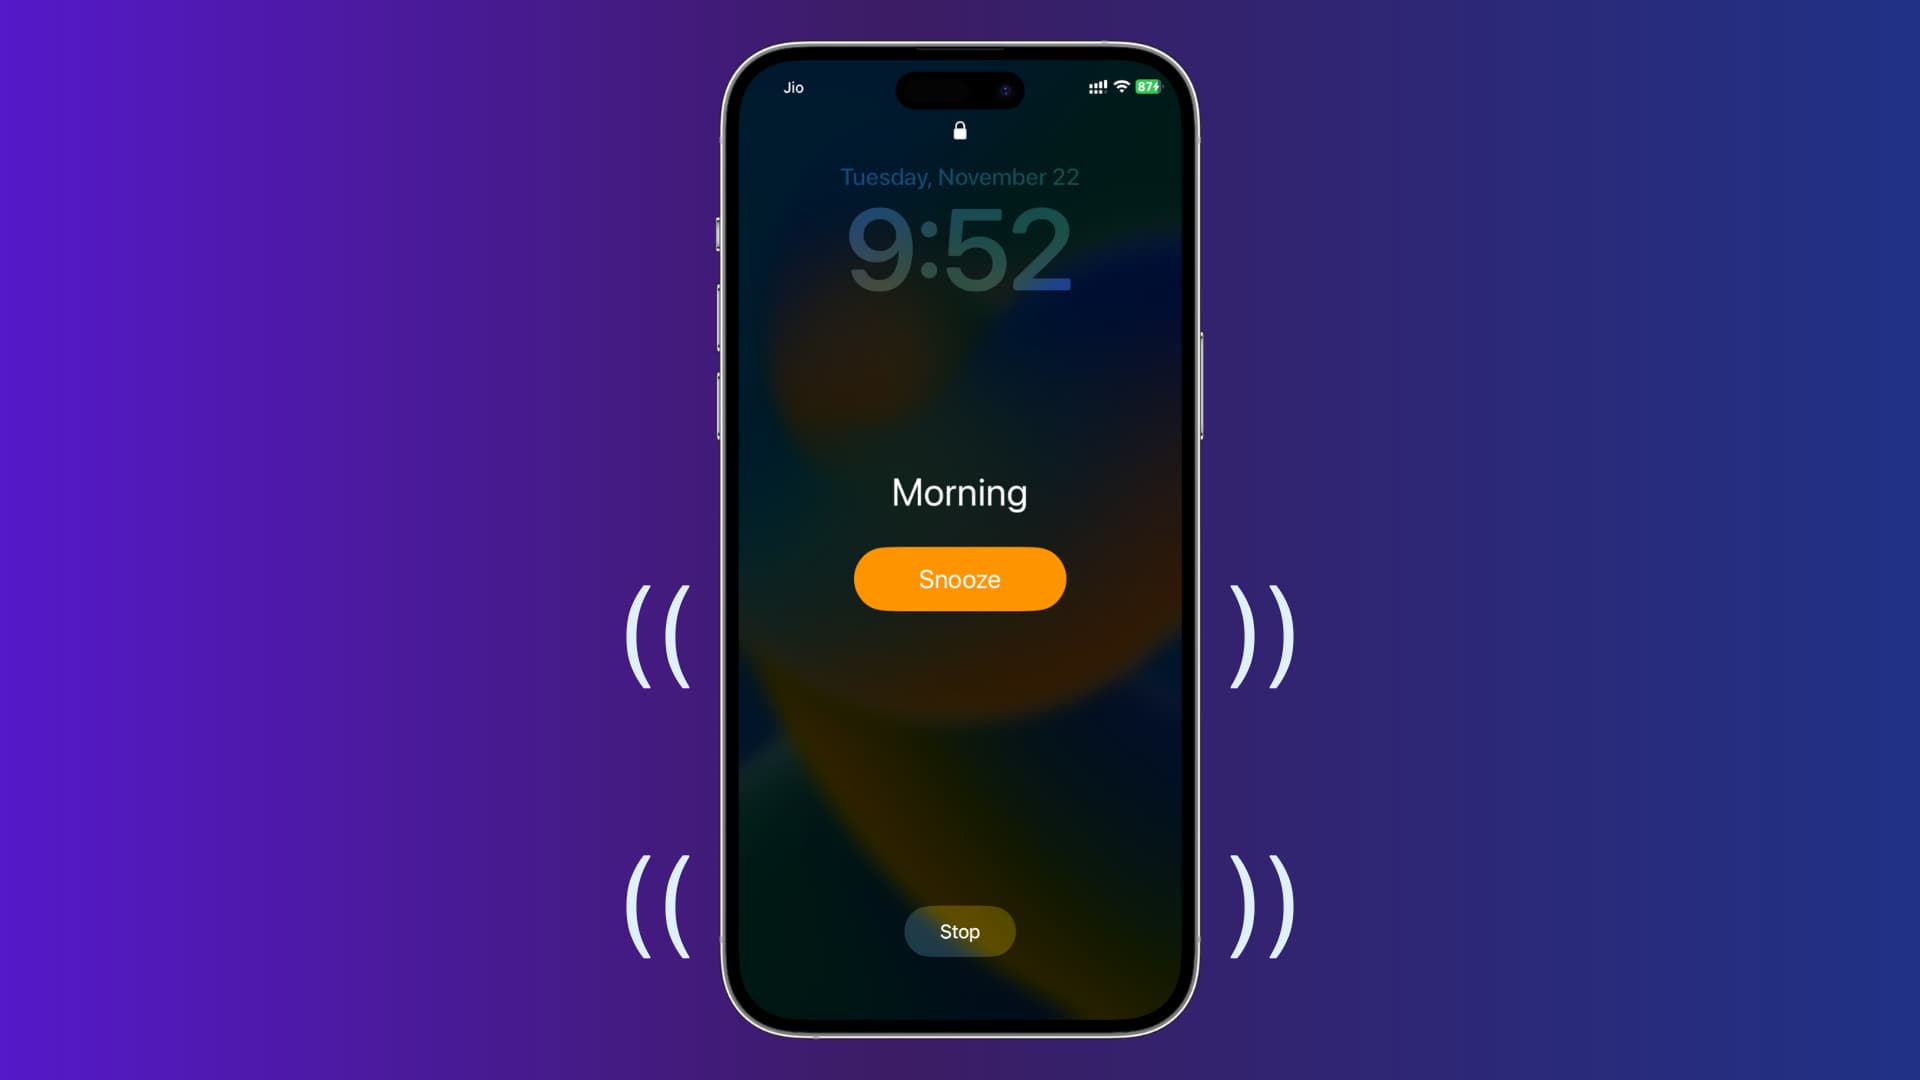 Alarme vibrante sur iPhone qui ne fait aucun son